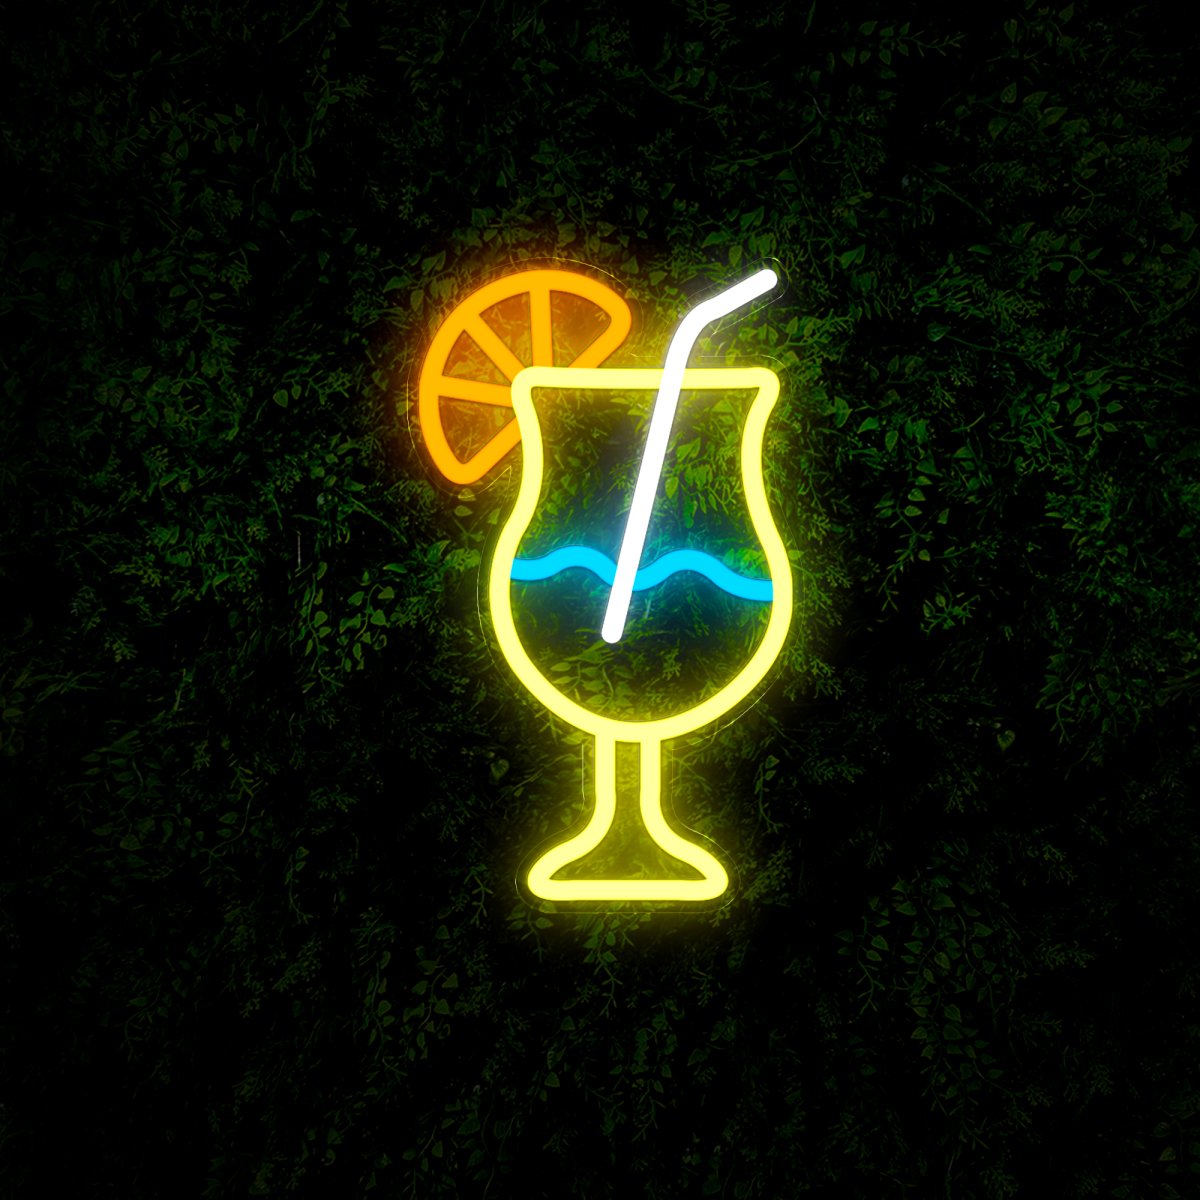 Cocktail Bar Restaurant Led Neon Sign - Reels Custom